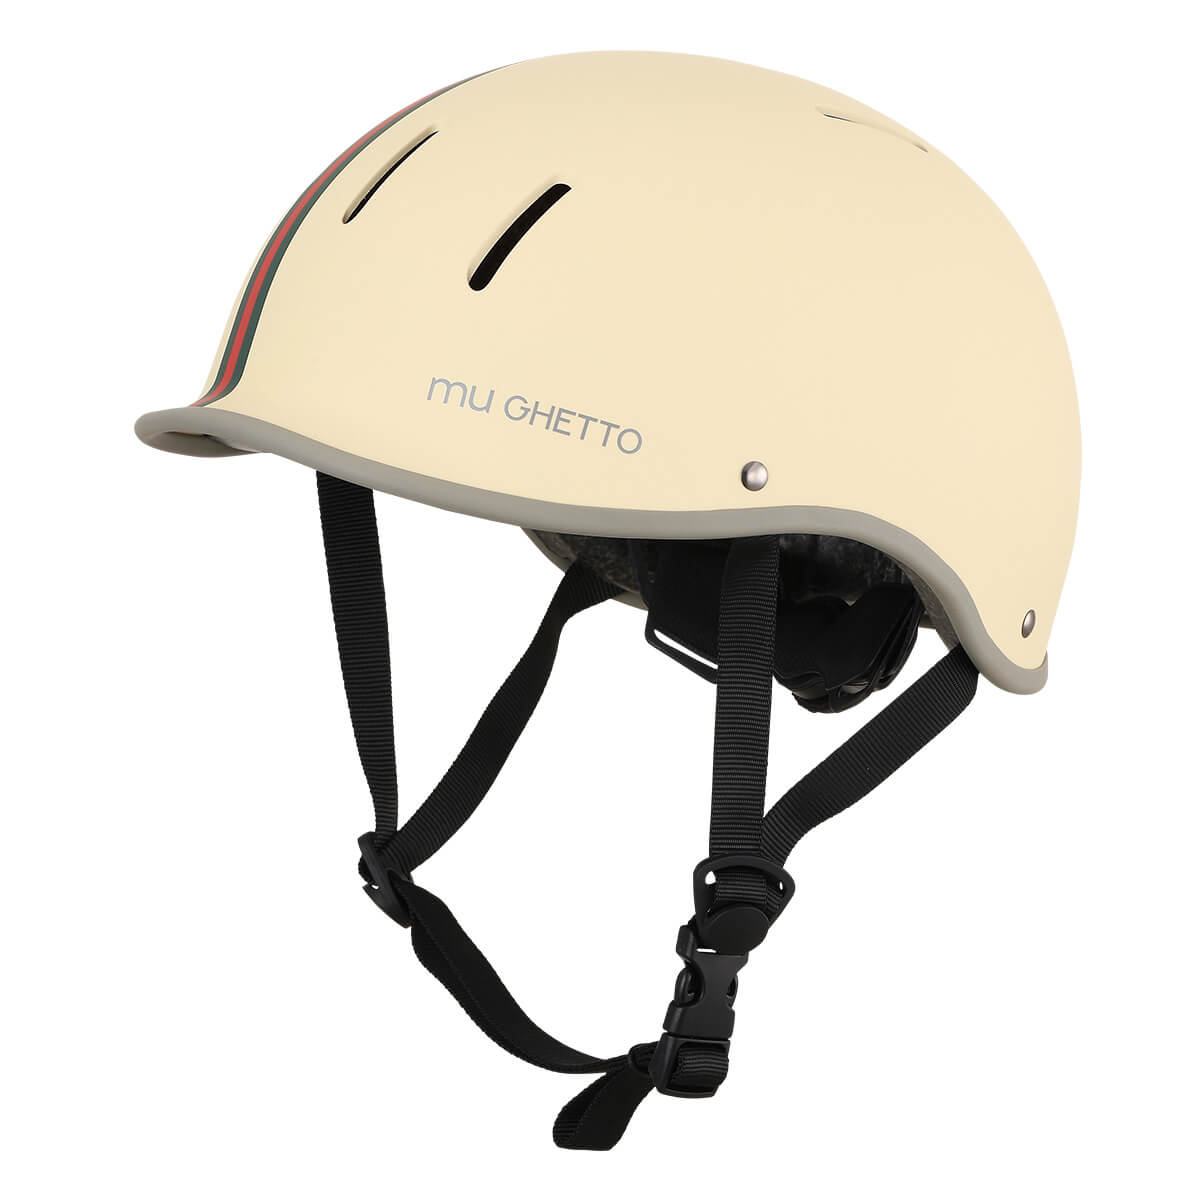 muGETTO ミュゲット ヘルメット 自転車 大人用 サイズ調整可能 SG規格適合 / 自転車ヘル...